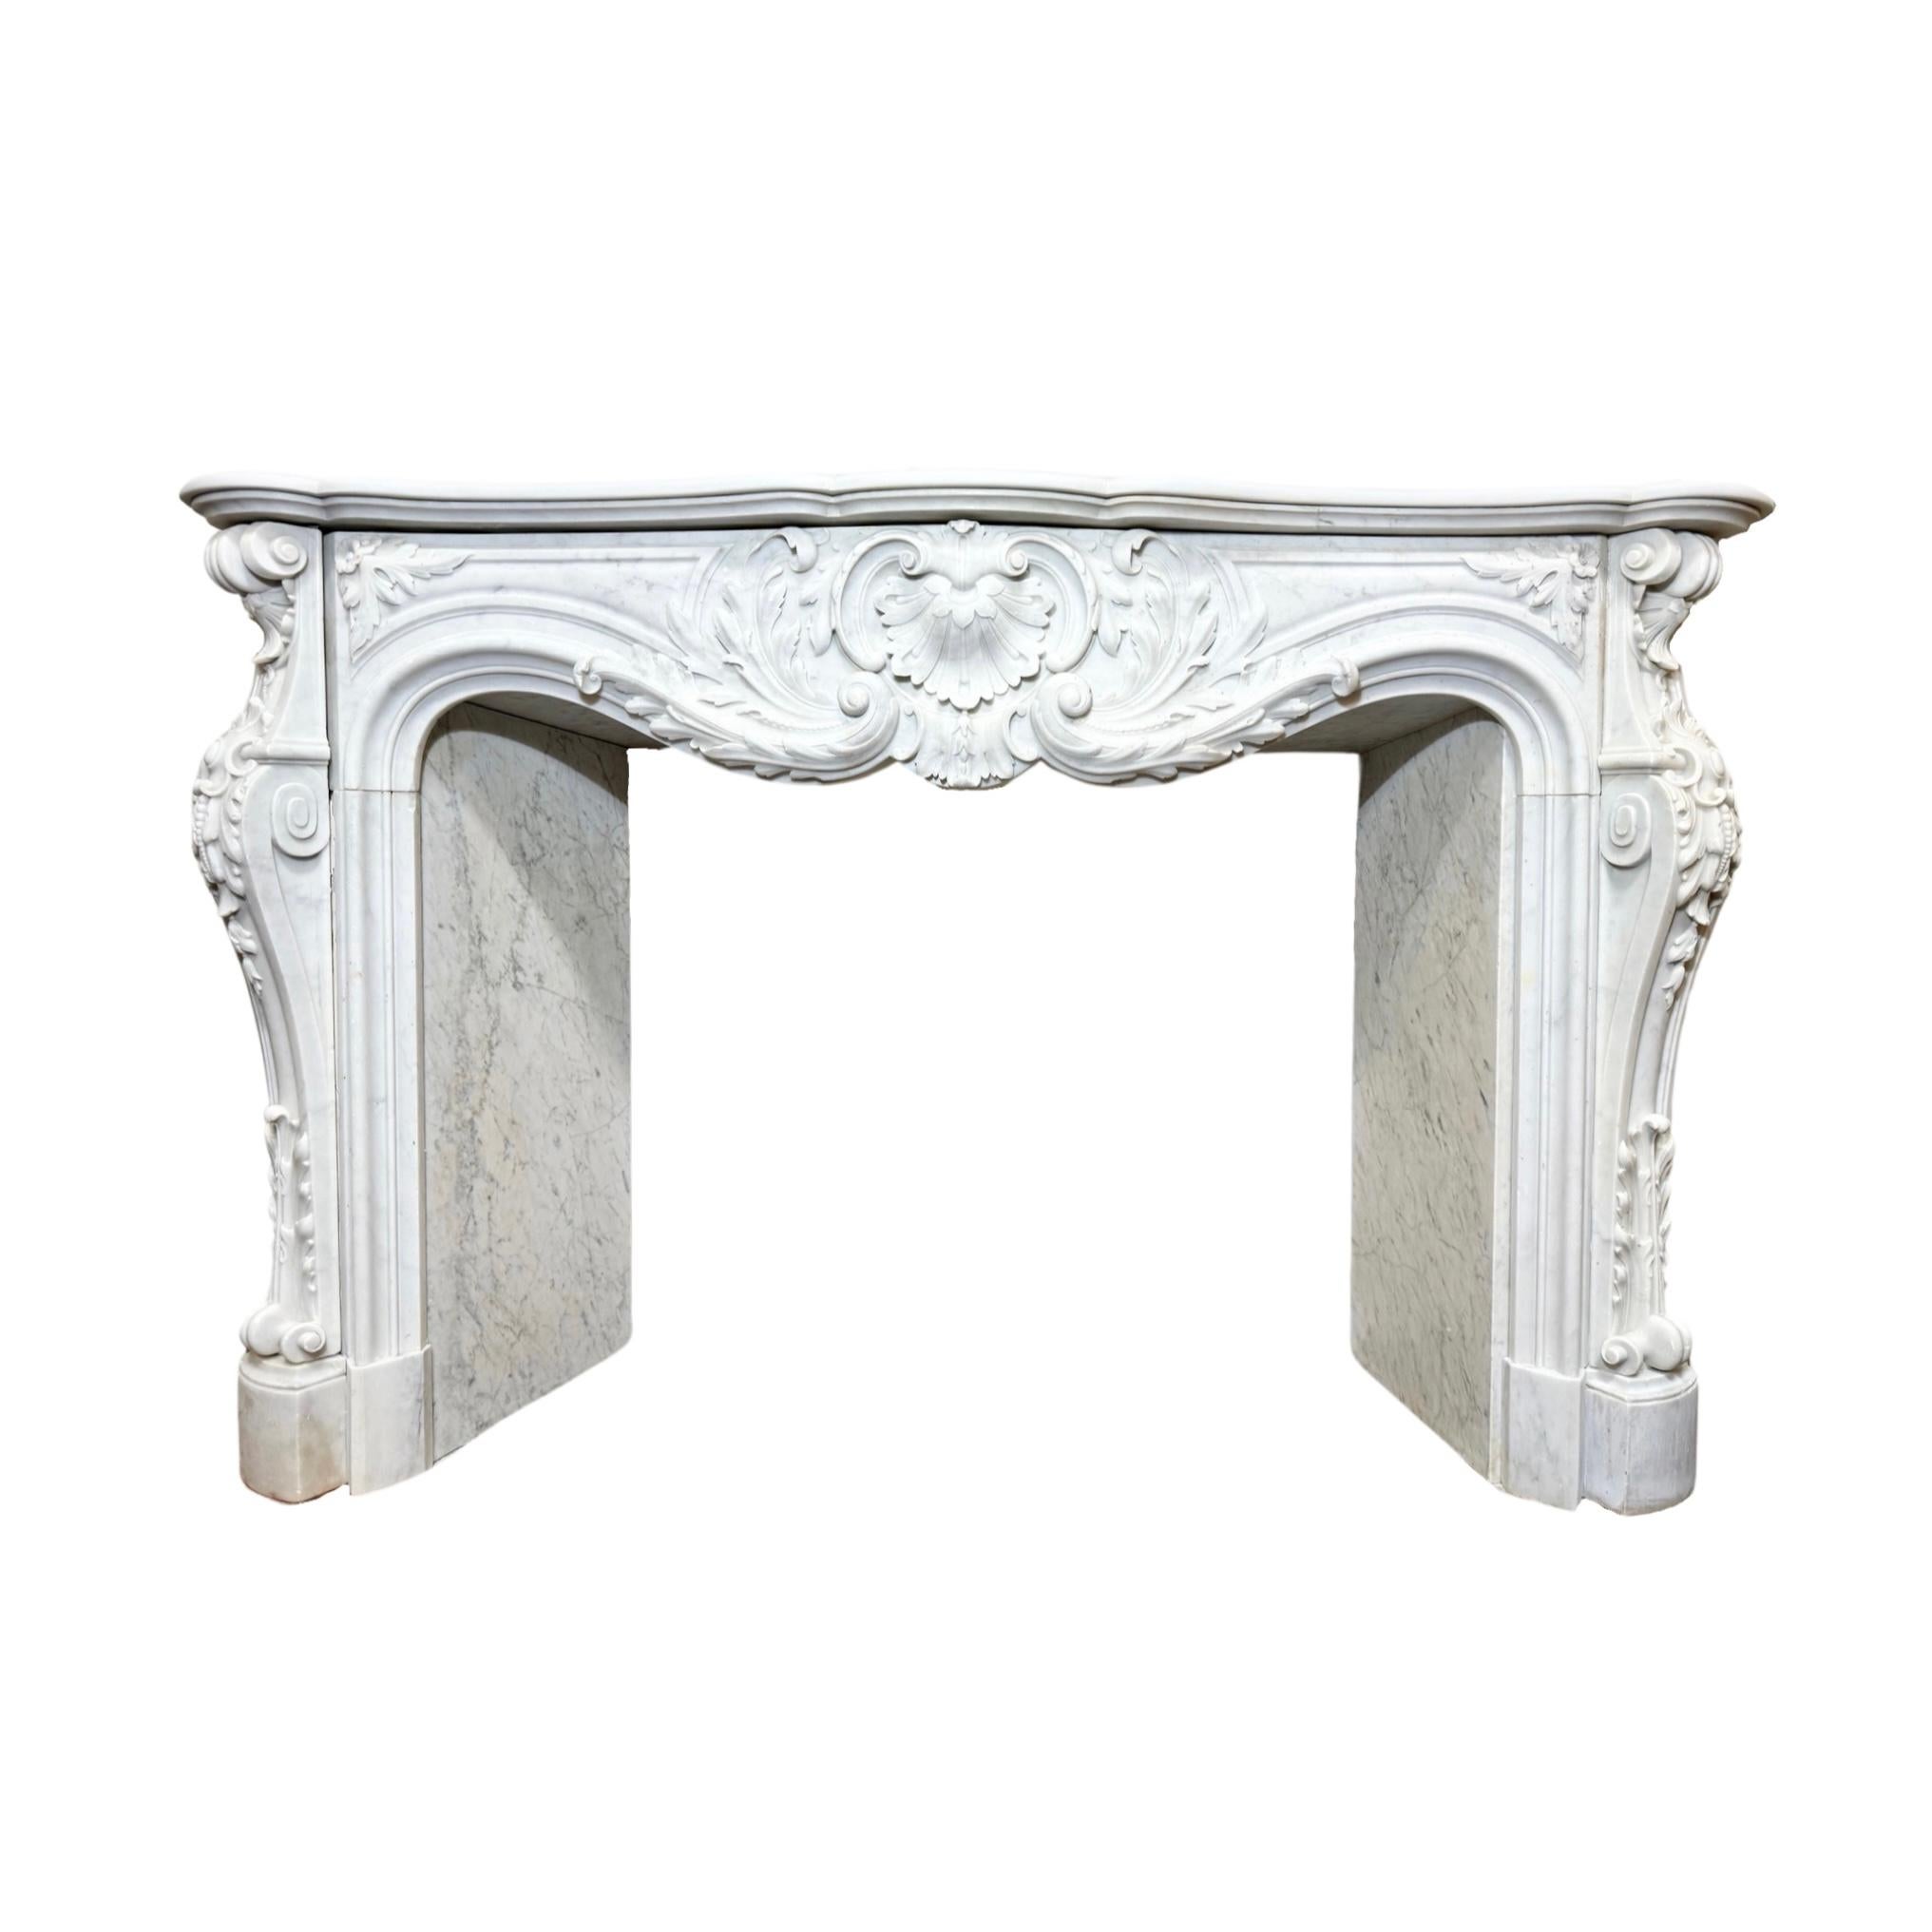 Dieser elegante Kaminsims aus französischem Carrara-Marmor ist aus hochwertigem weißem Carrara-Marmor gefertigt, der für seine Haltbarkeit und zeitlose Schönheit bekannt ist. Mit seinem geschnitzten Design im Stil von Louis dem 15. aus den 1820er